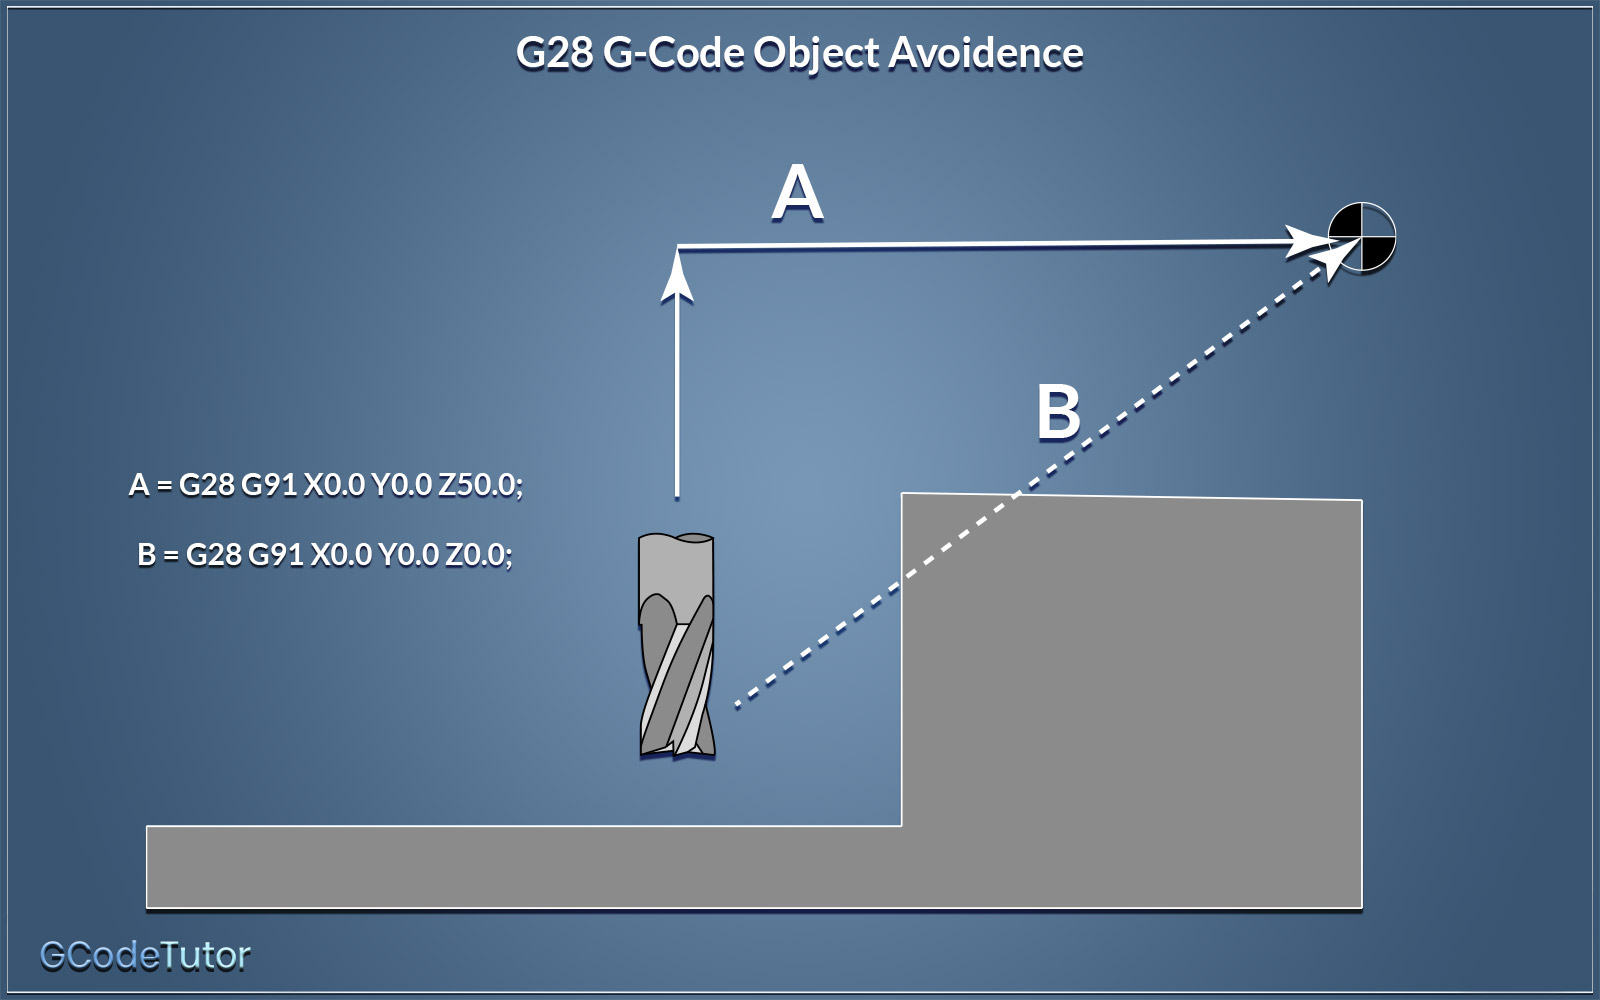 G28 G-Code